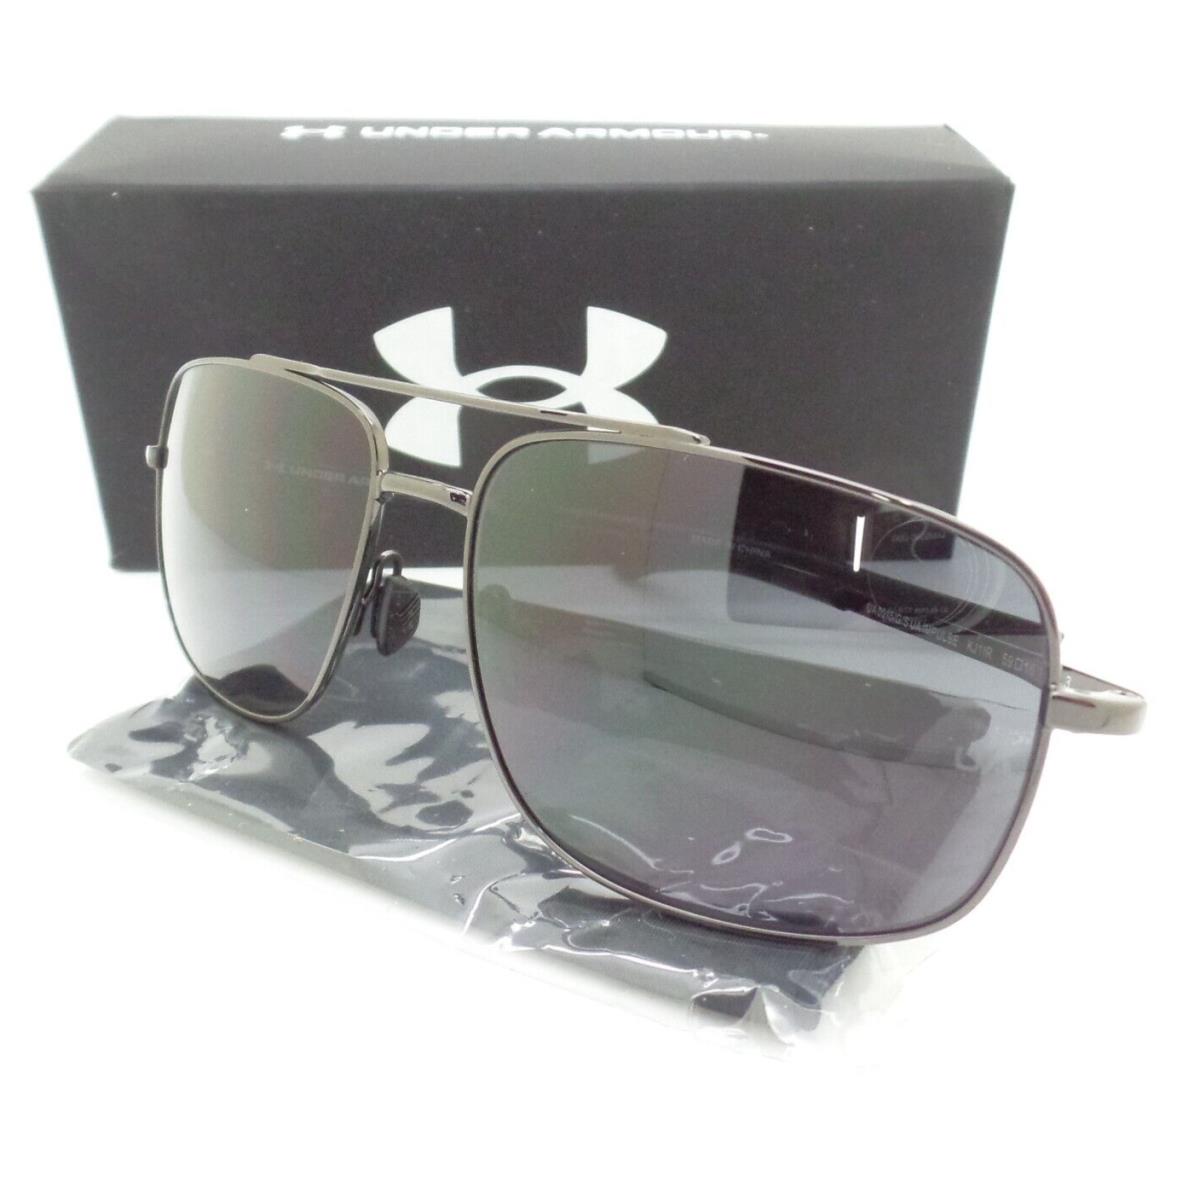 0円 お買得 Under armour ファッション サングラス 8630130-010108 Armour No Limits Polarized Sunglasses ANSI Z87 - NO BOX